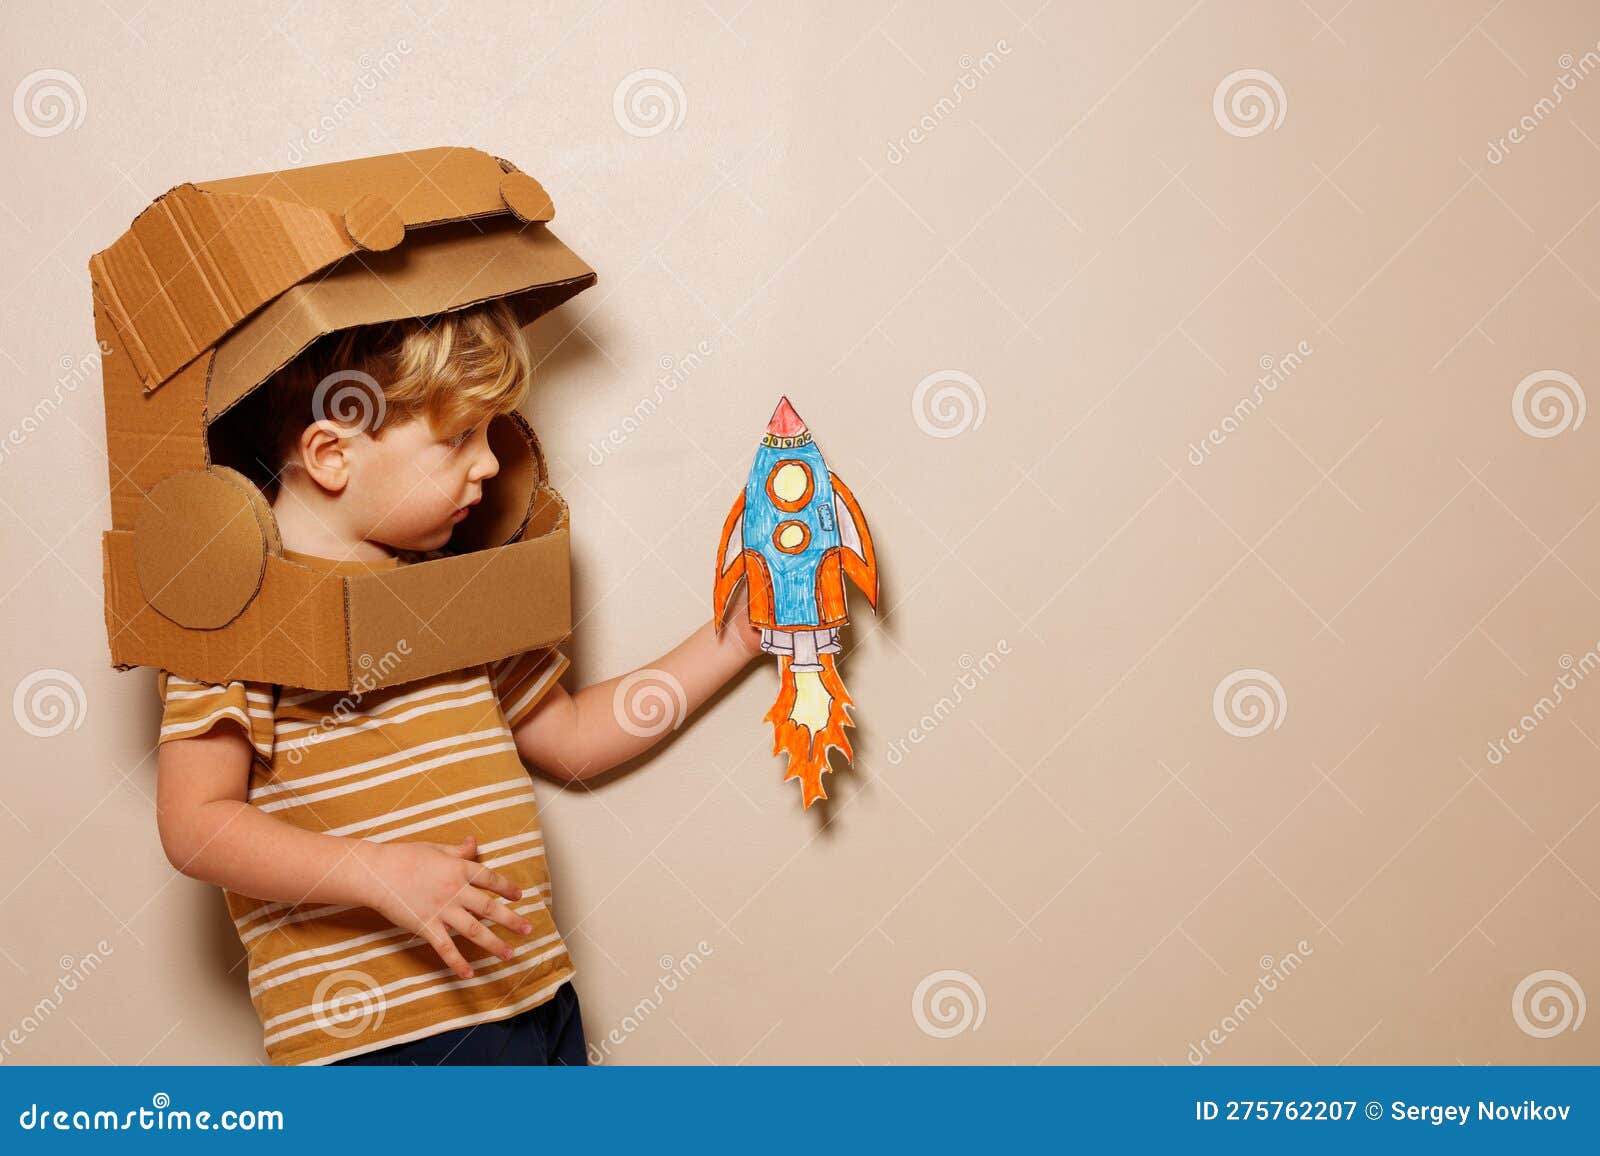 Casco espacial de astronauta infantil